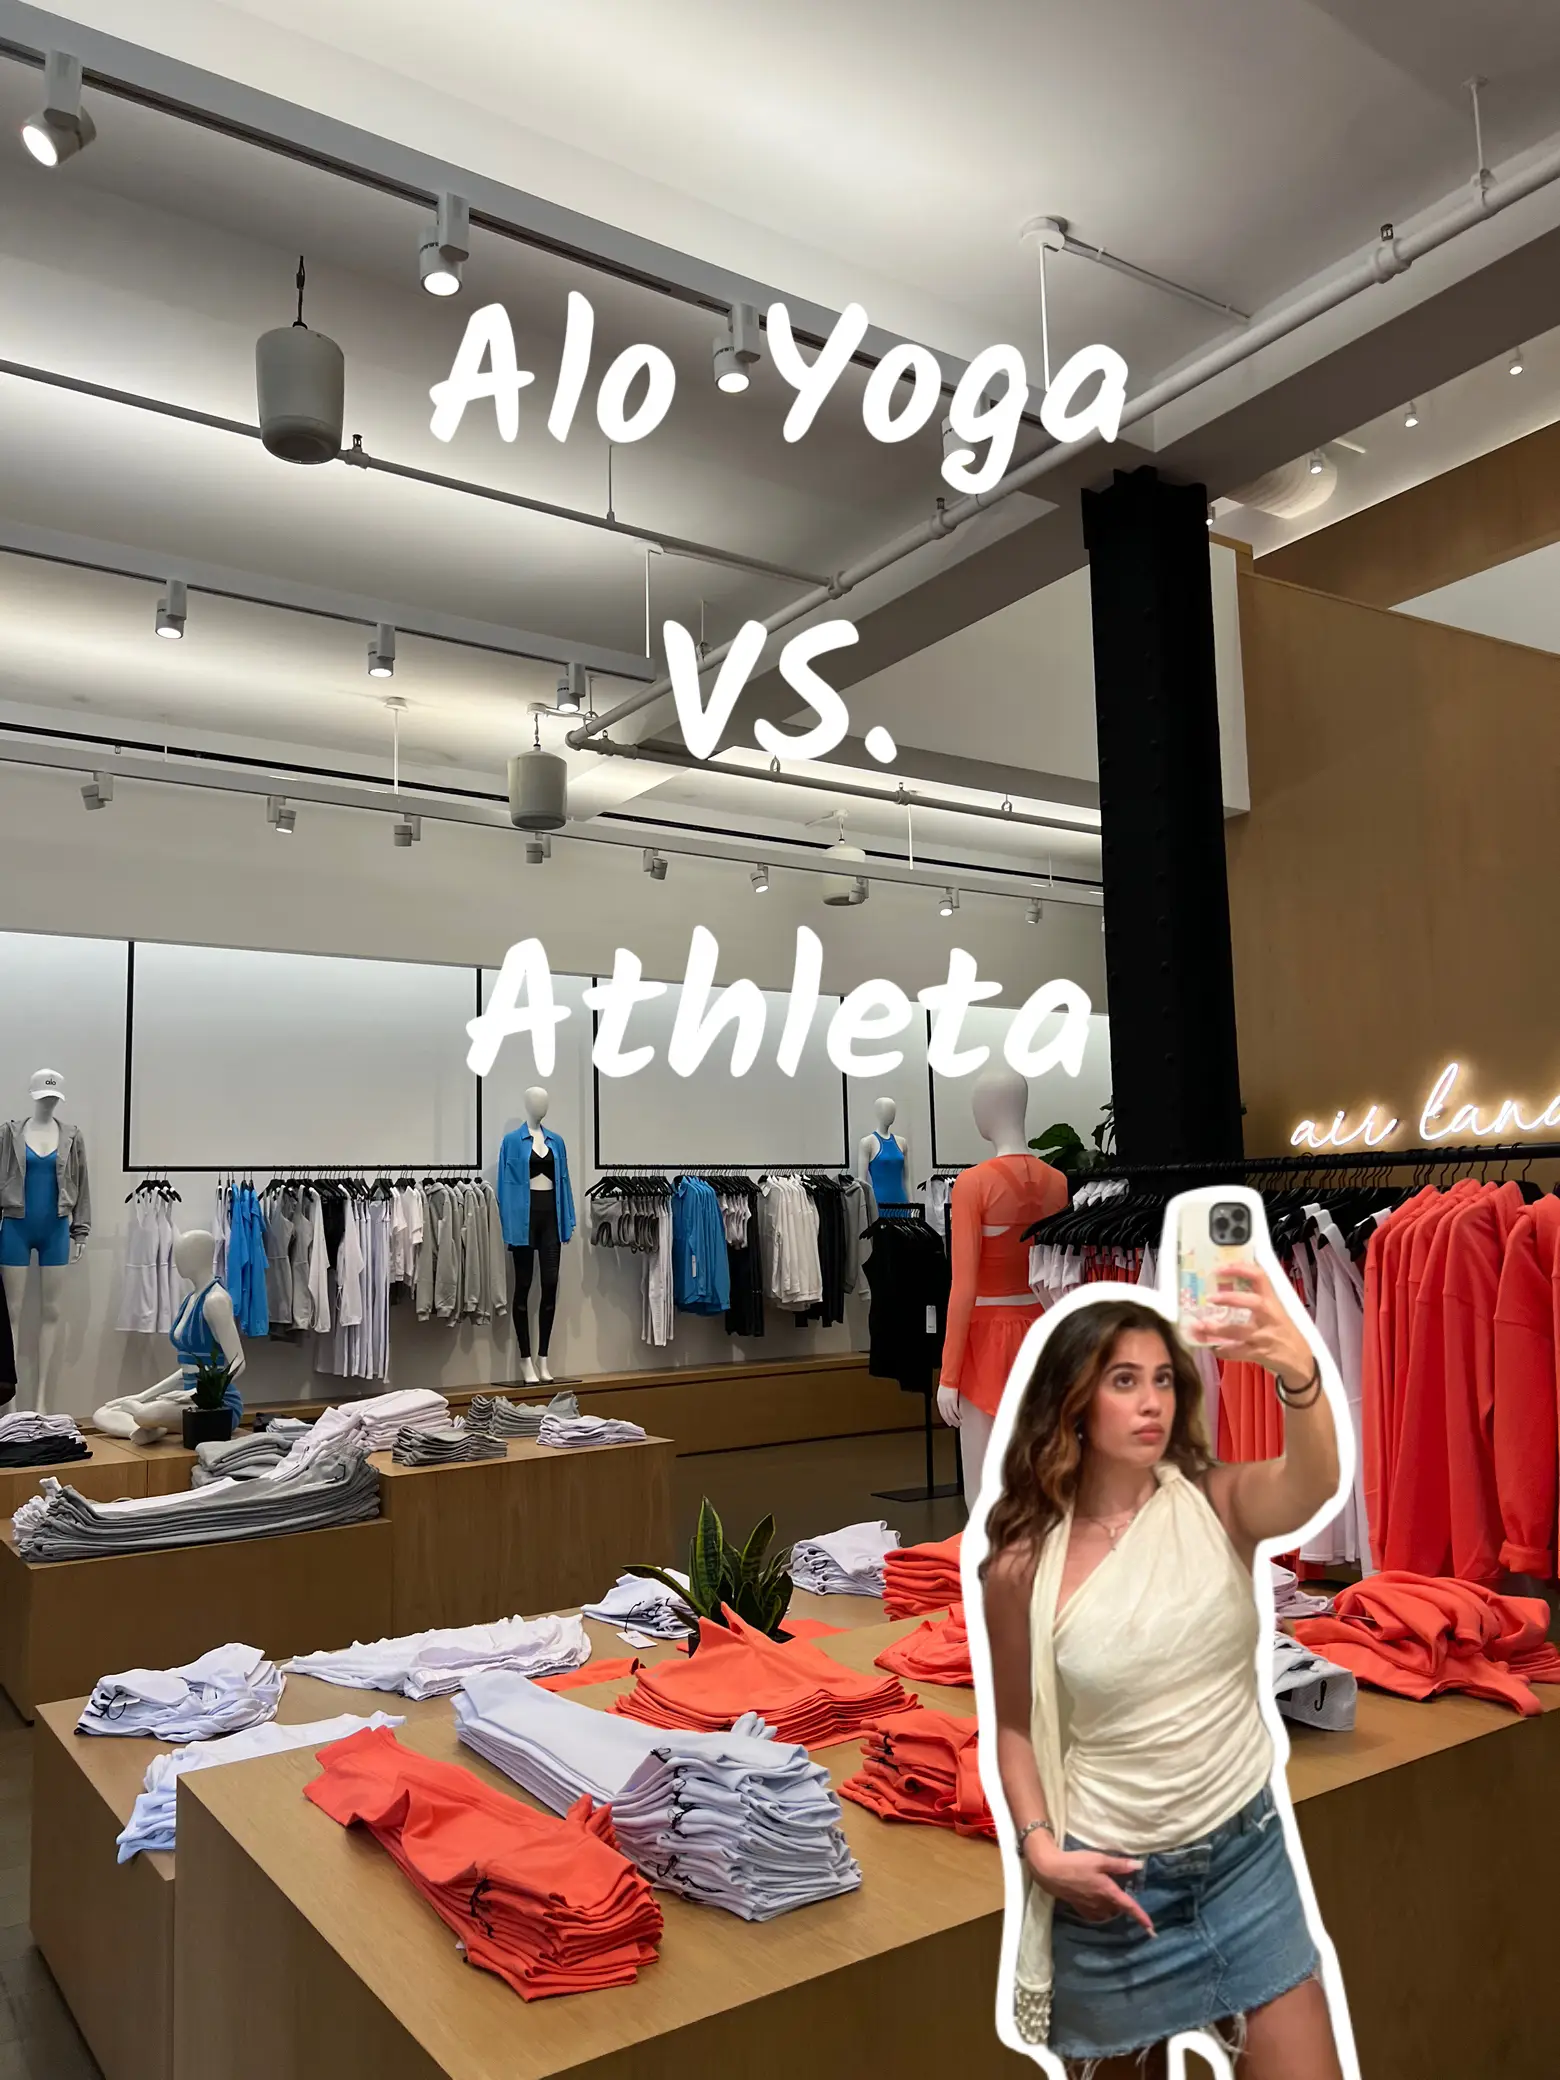 The best alo yoga dupe 😍 #aloyogadupes #aloyogahaul #activewear